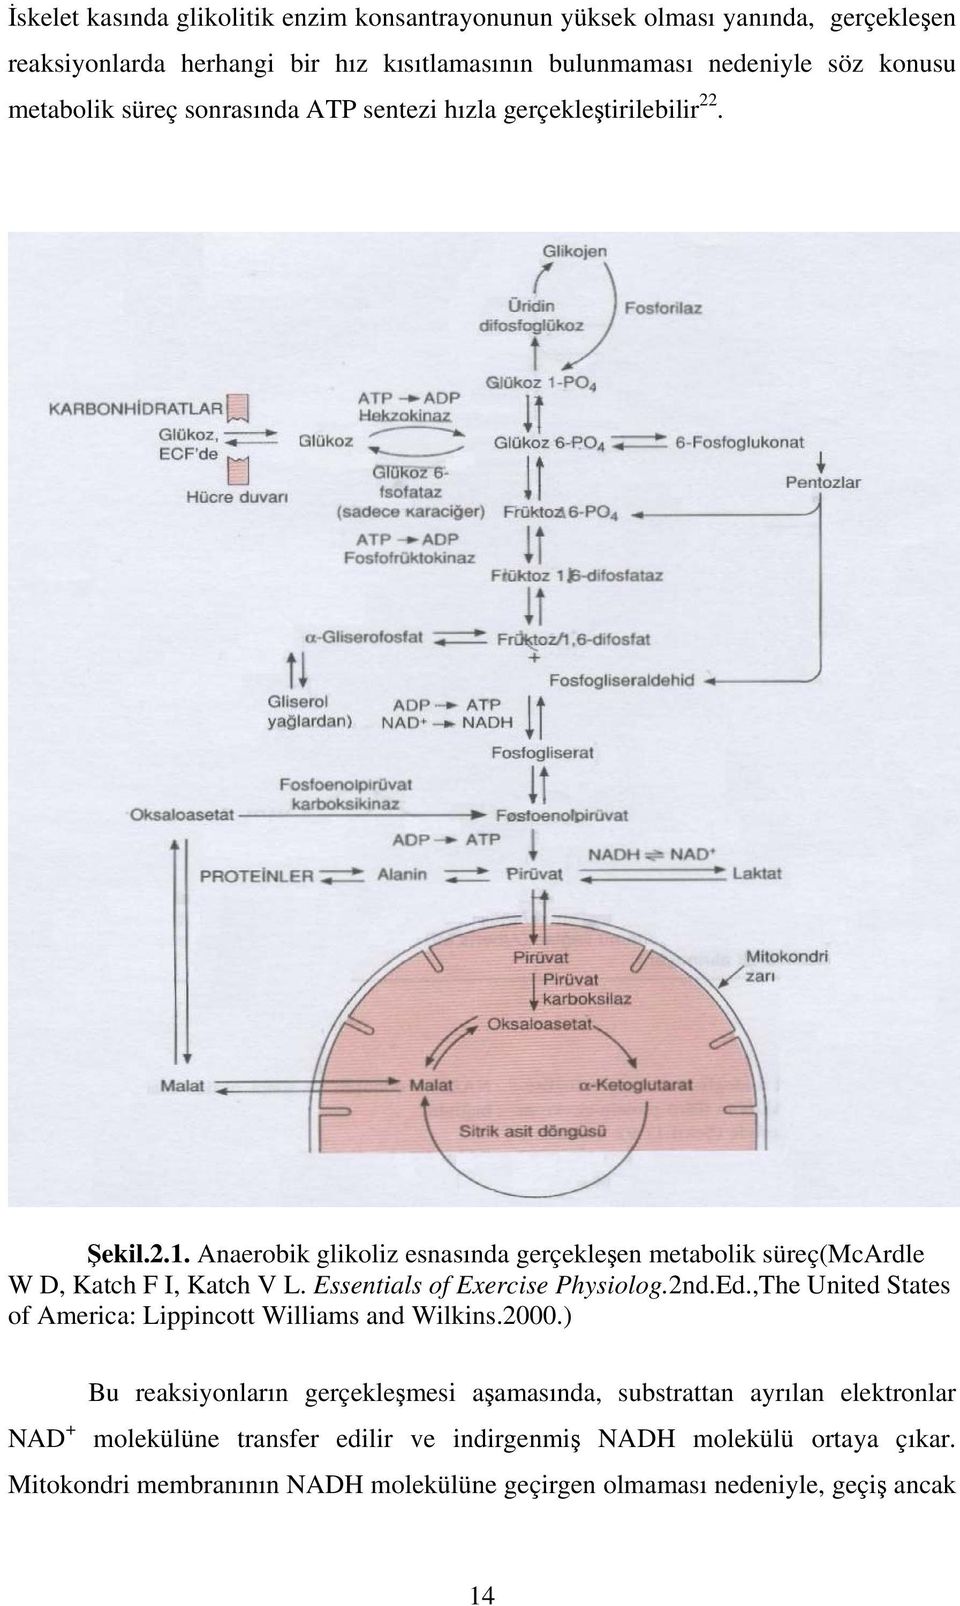 Anaerobik glikoliz esnasında gerçekleşen metabolik süreç(mcardle W D, Katch F I, Katch V L. Essentials of Exercise Physiolog.2nd.Ed.